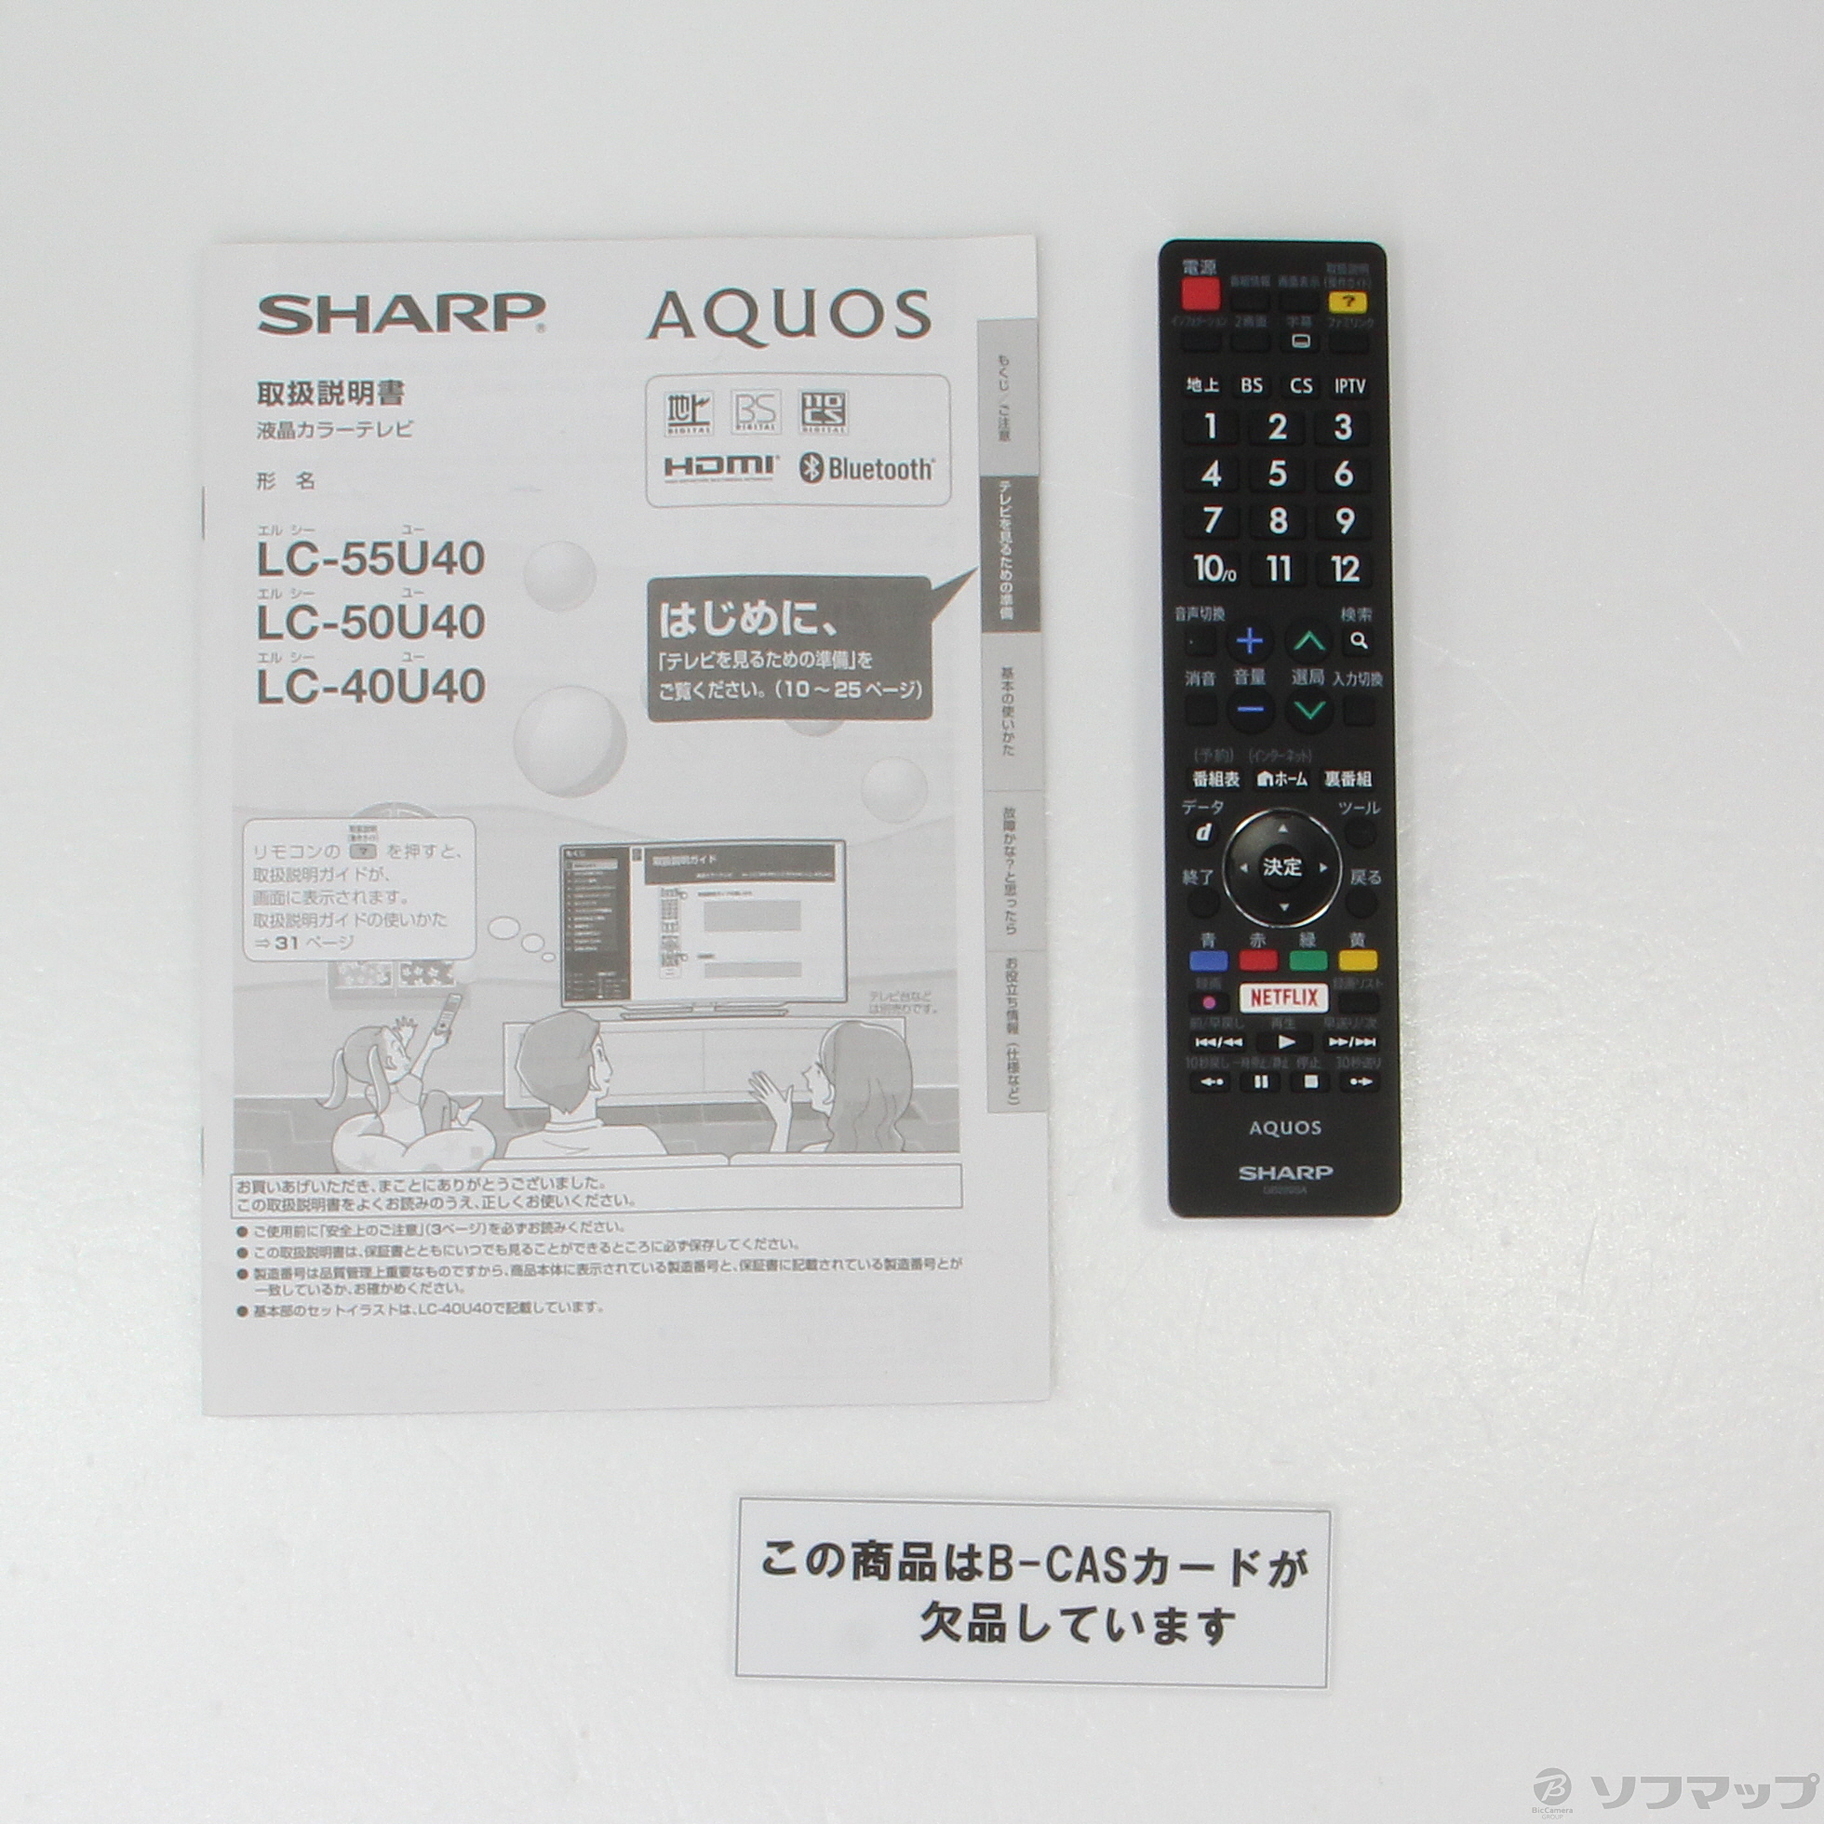 SHARP AQUOS LC-50U40 (ジャンク) 50インチ 完璧 - テレビ